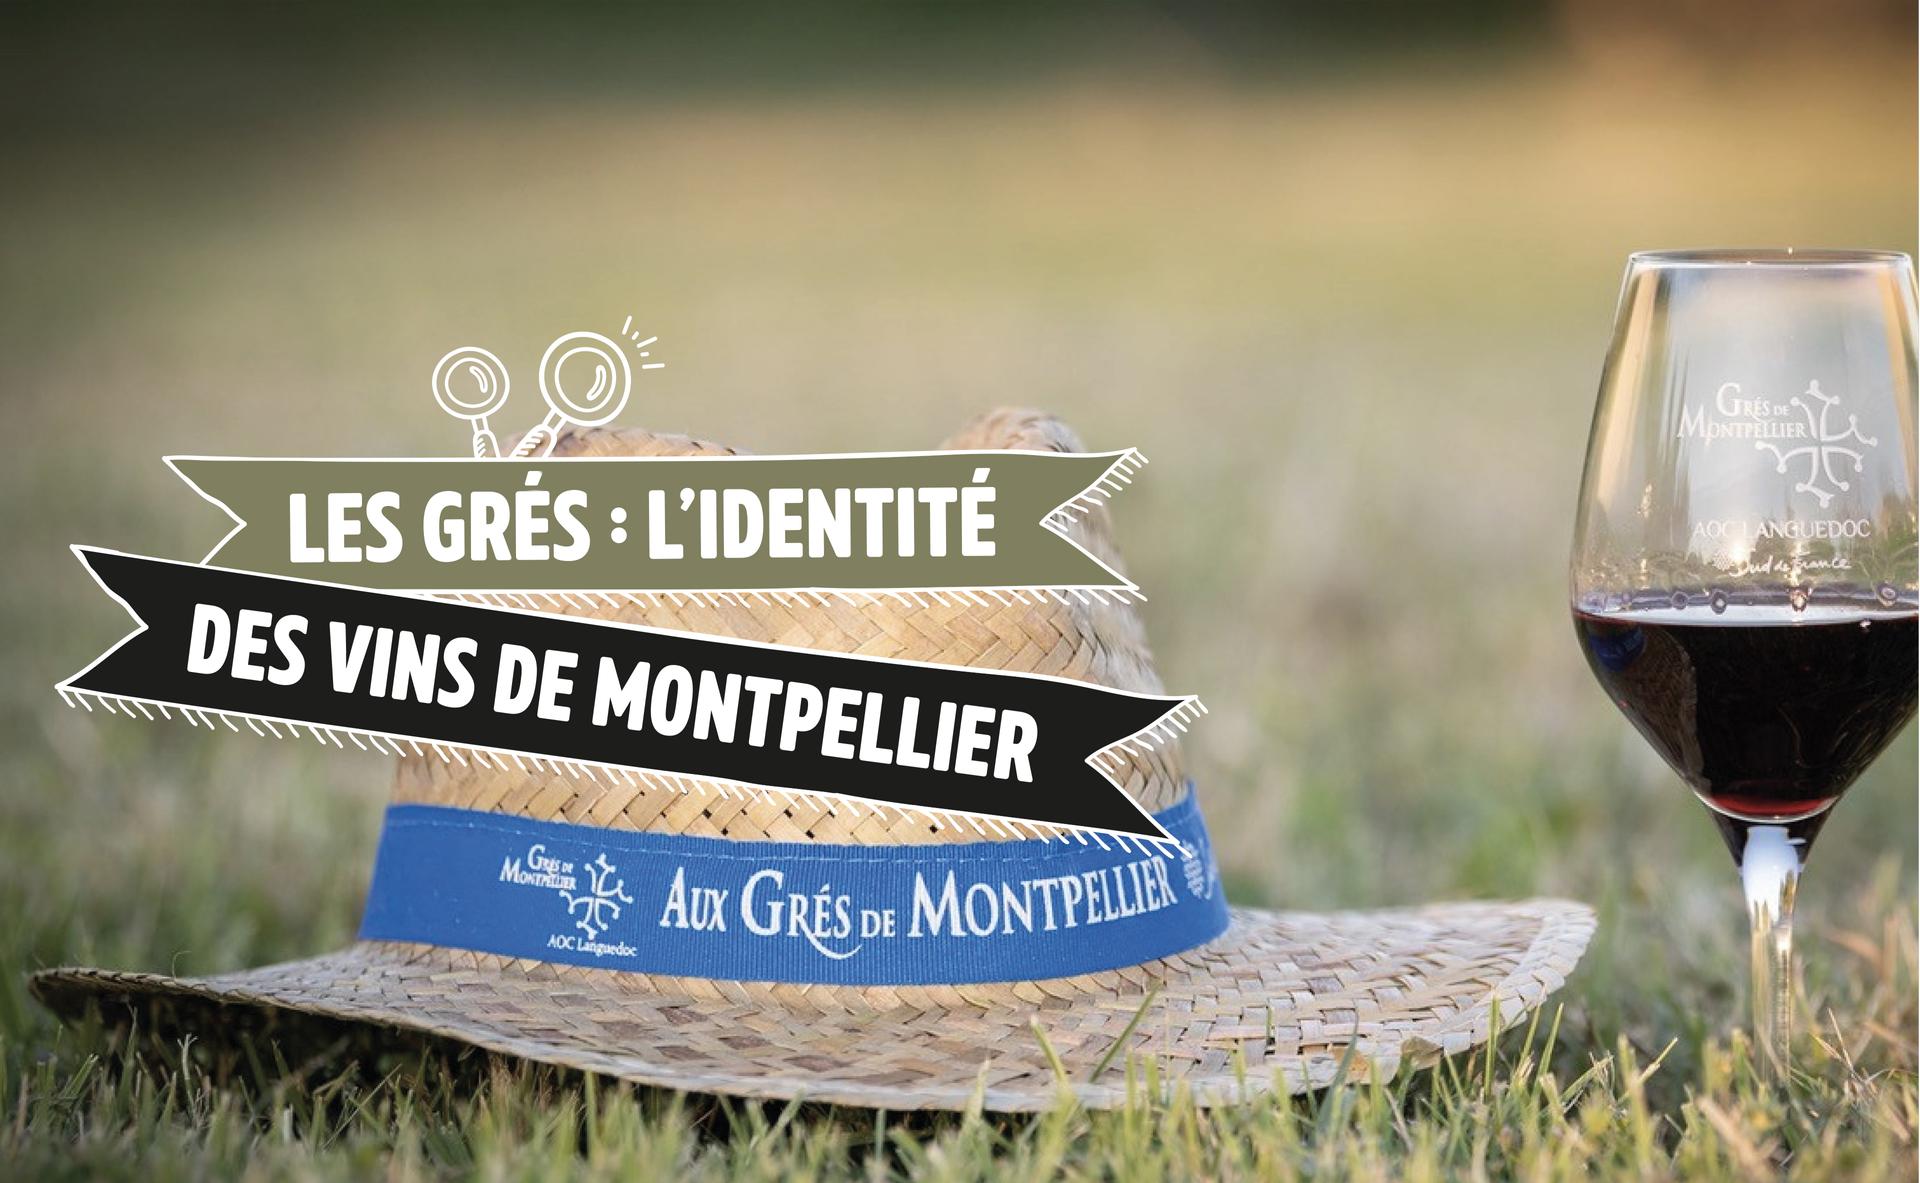 Les Grés : l’identité des vins de Montpellier